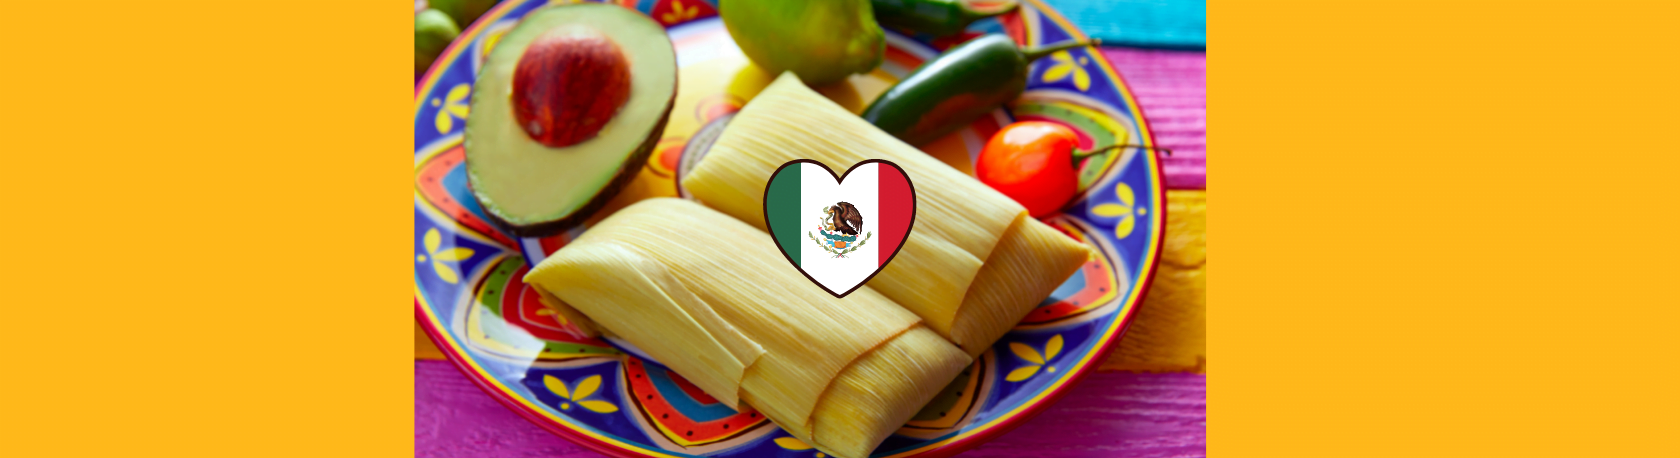 ¿Sabías que en México hay más de 500 variedades de tamales? - Easy Español